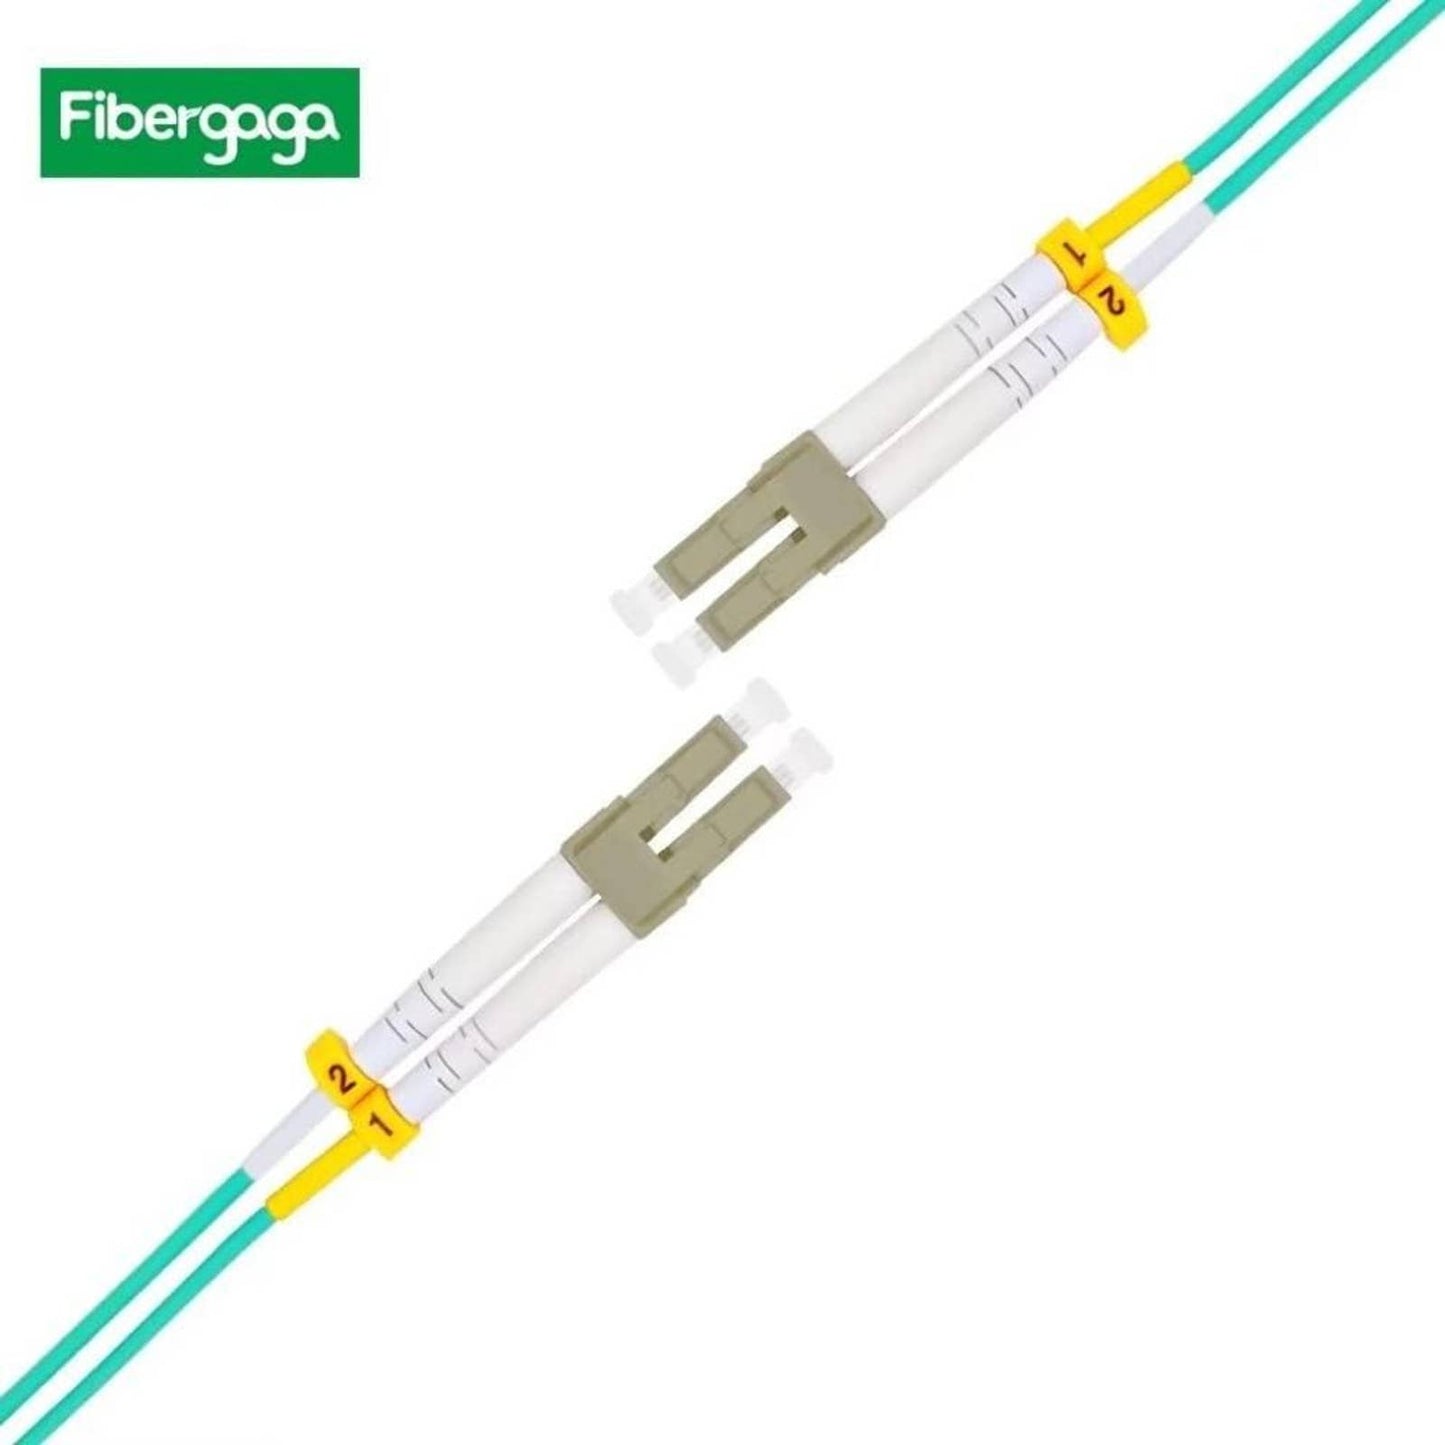 Fibergaga 0.5m(1.6ft) OM3 LC/UPC to LC/UPC Fiber Patch Cable 10GB Multimode